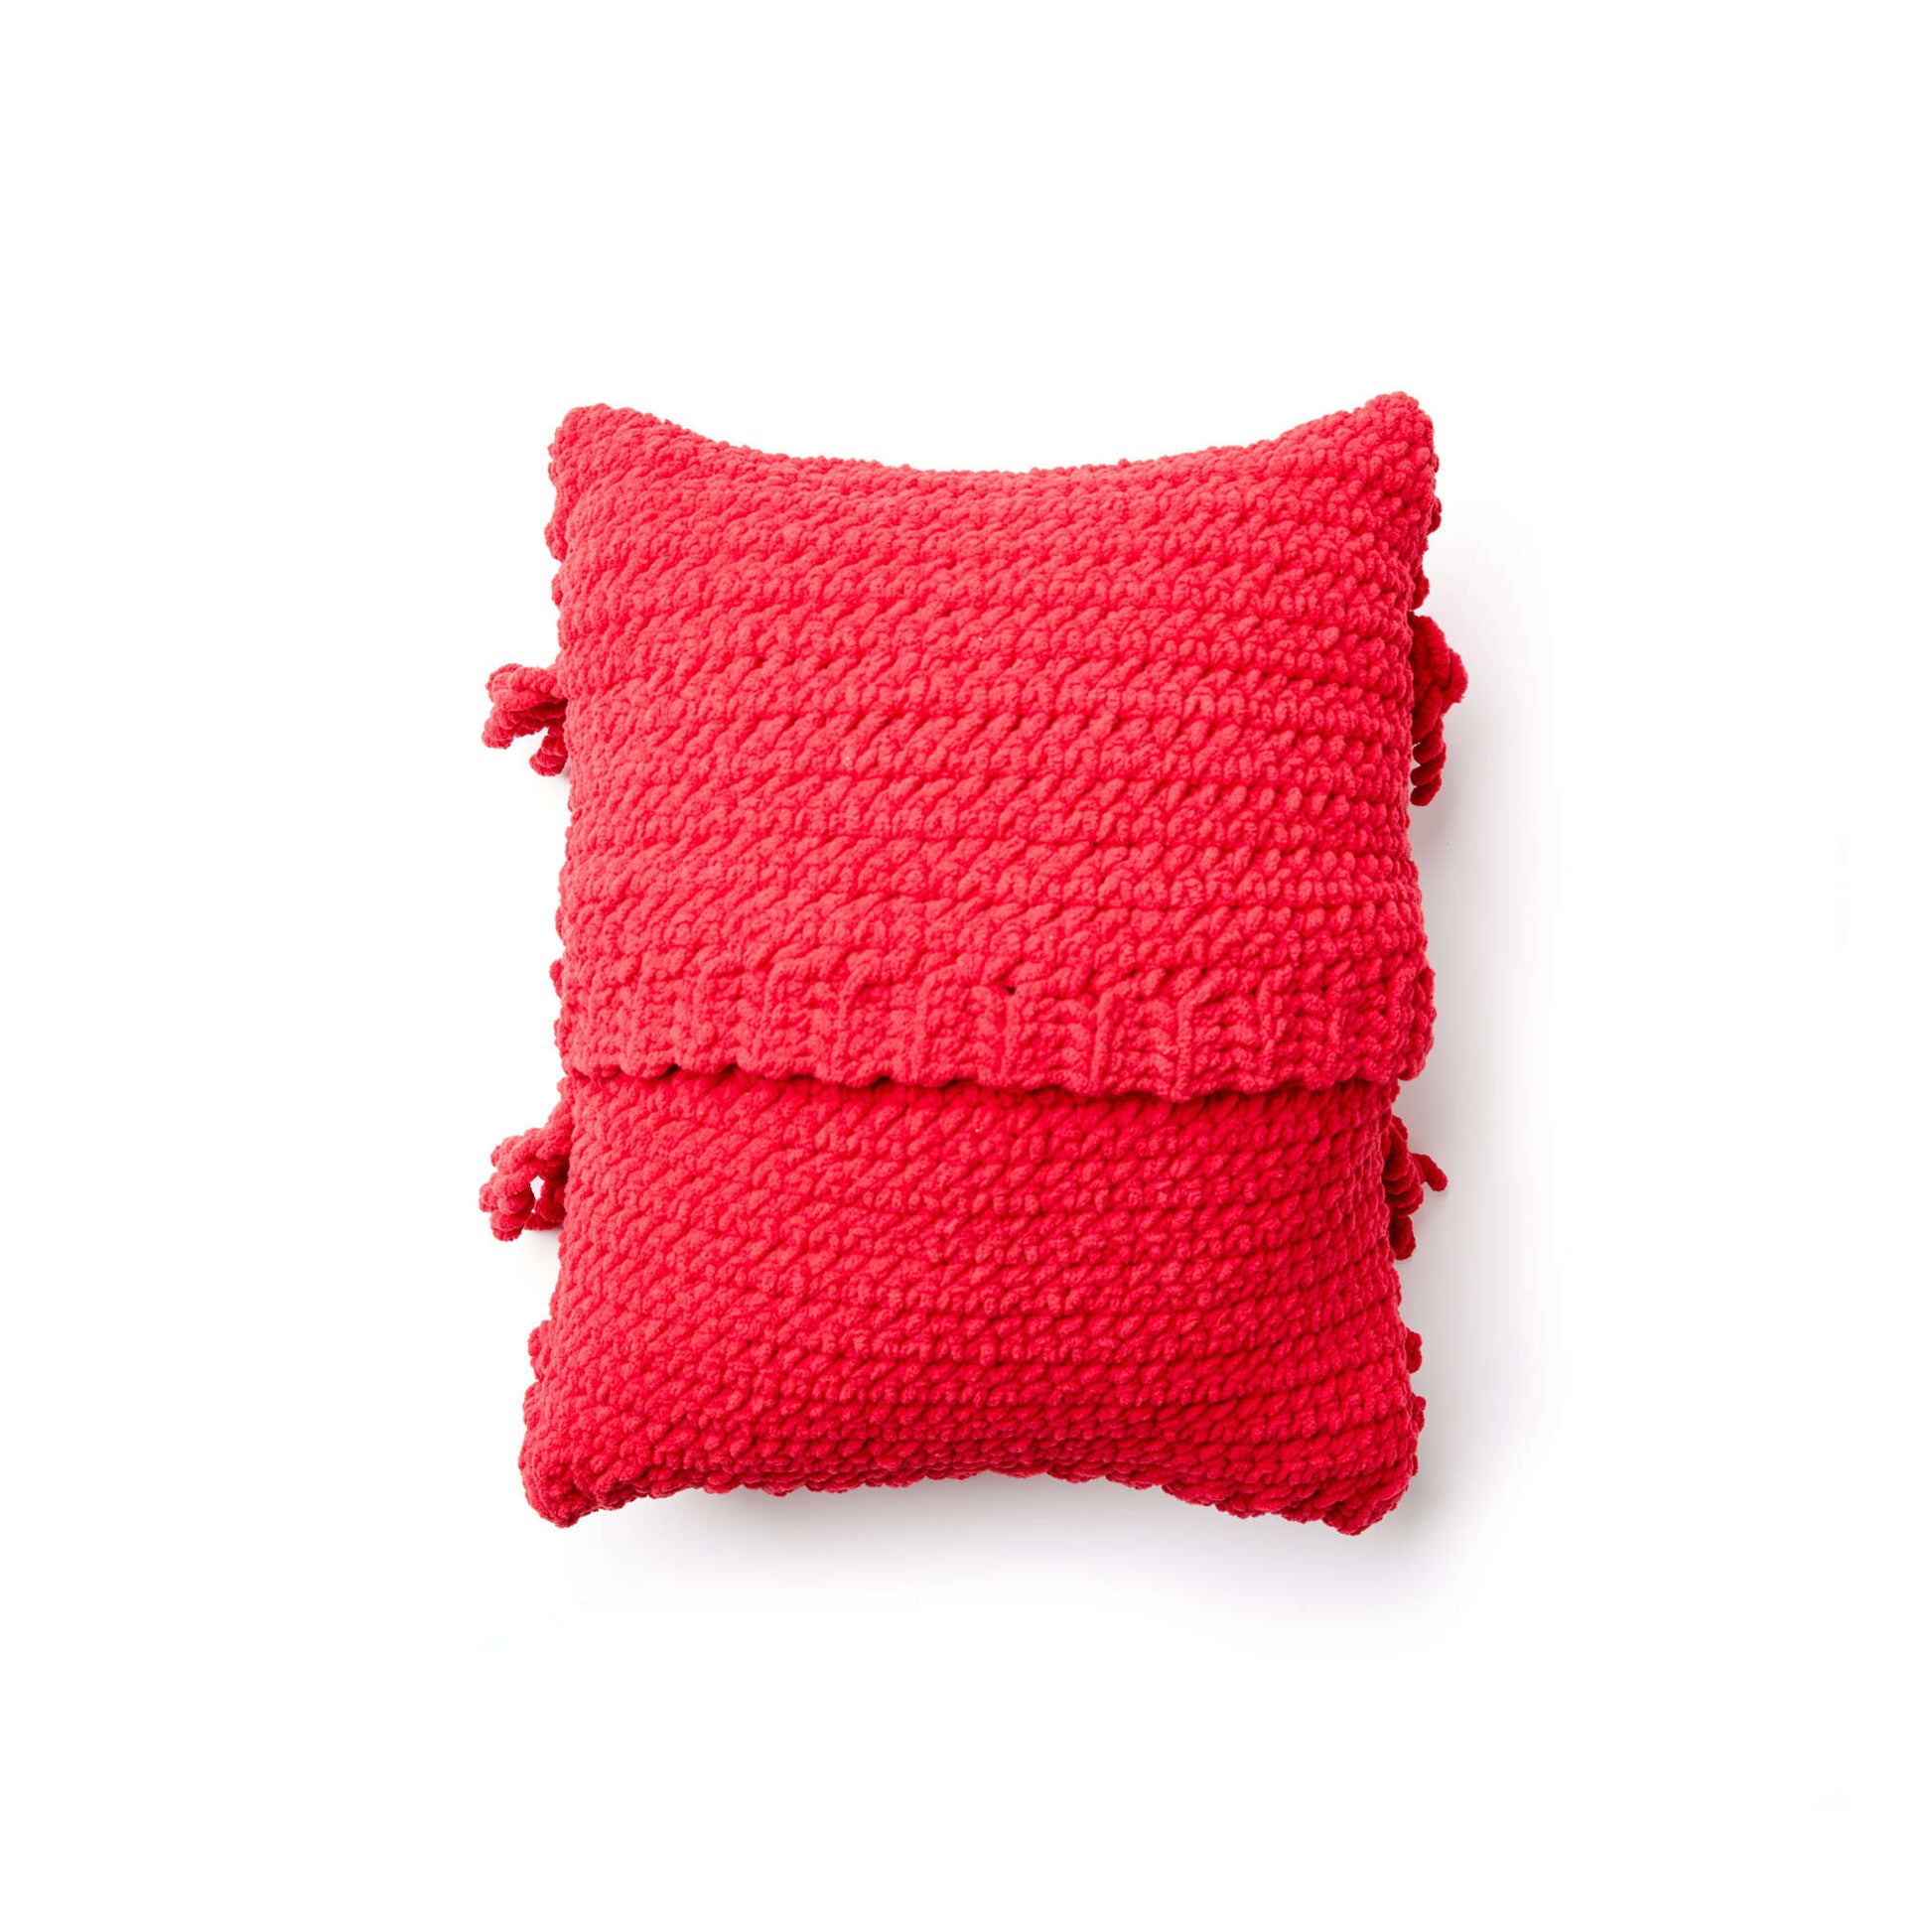 Free Bernat Bobble Fringe Crochet Pillow Pattern